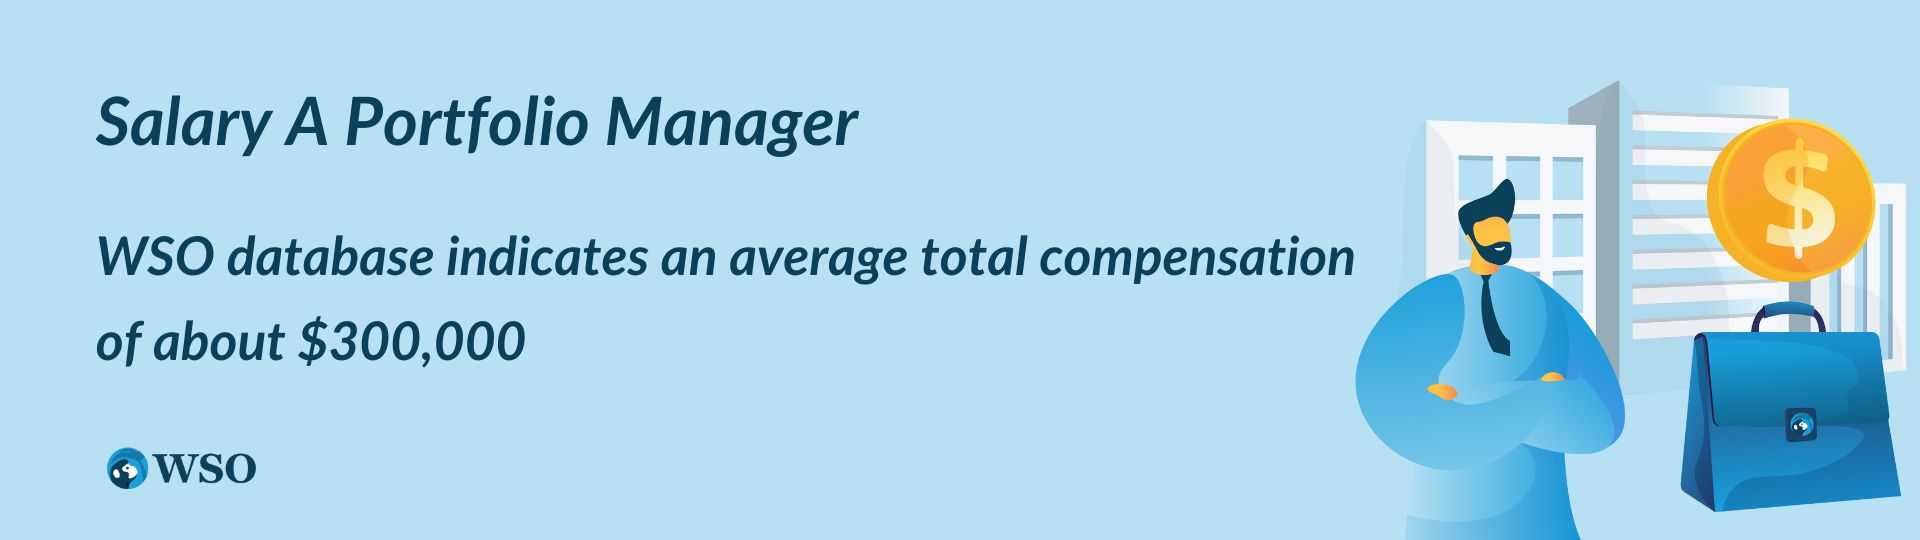 A portfolio manager Salary